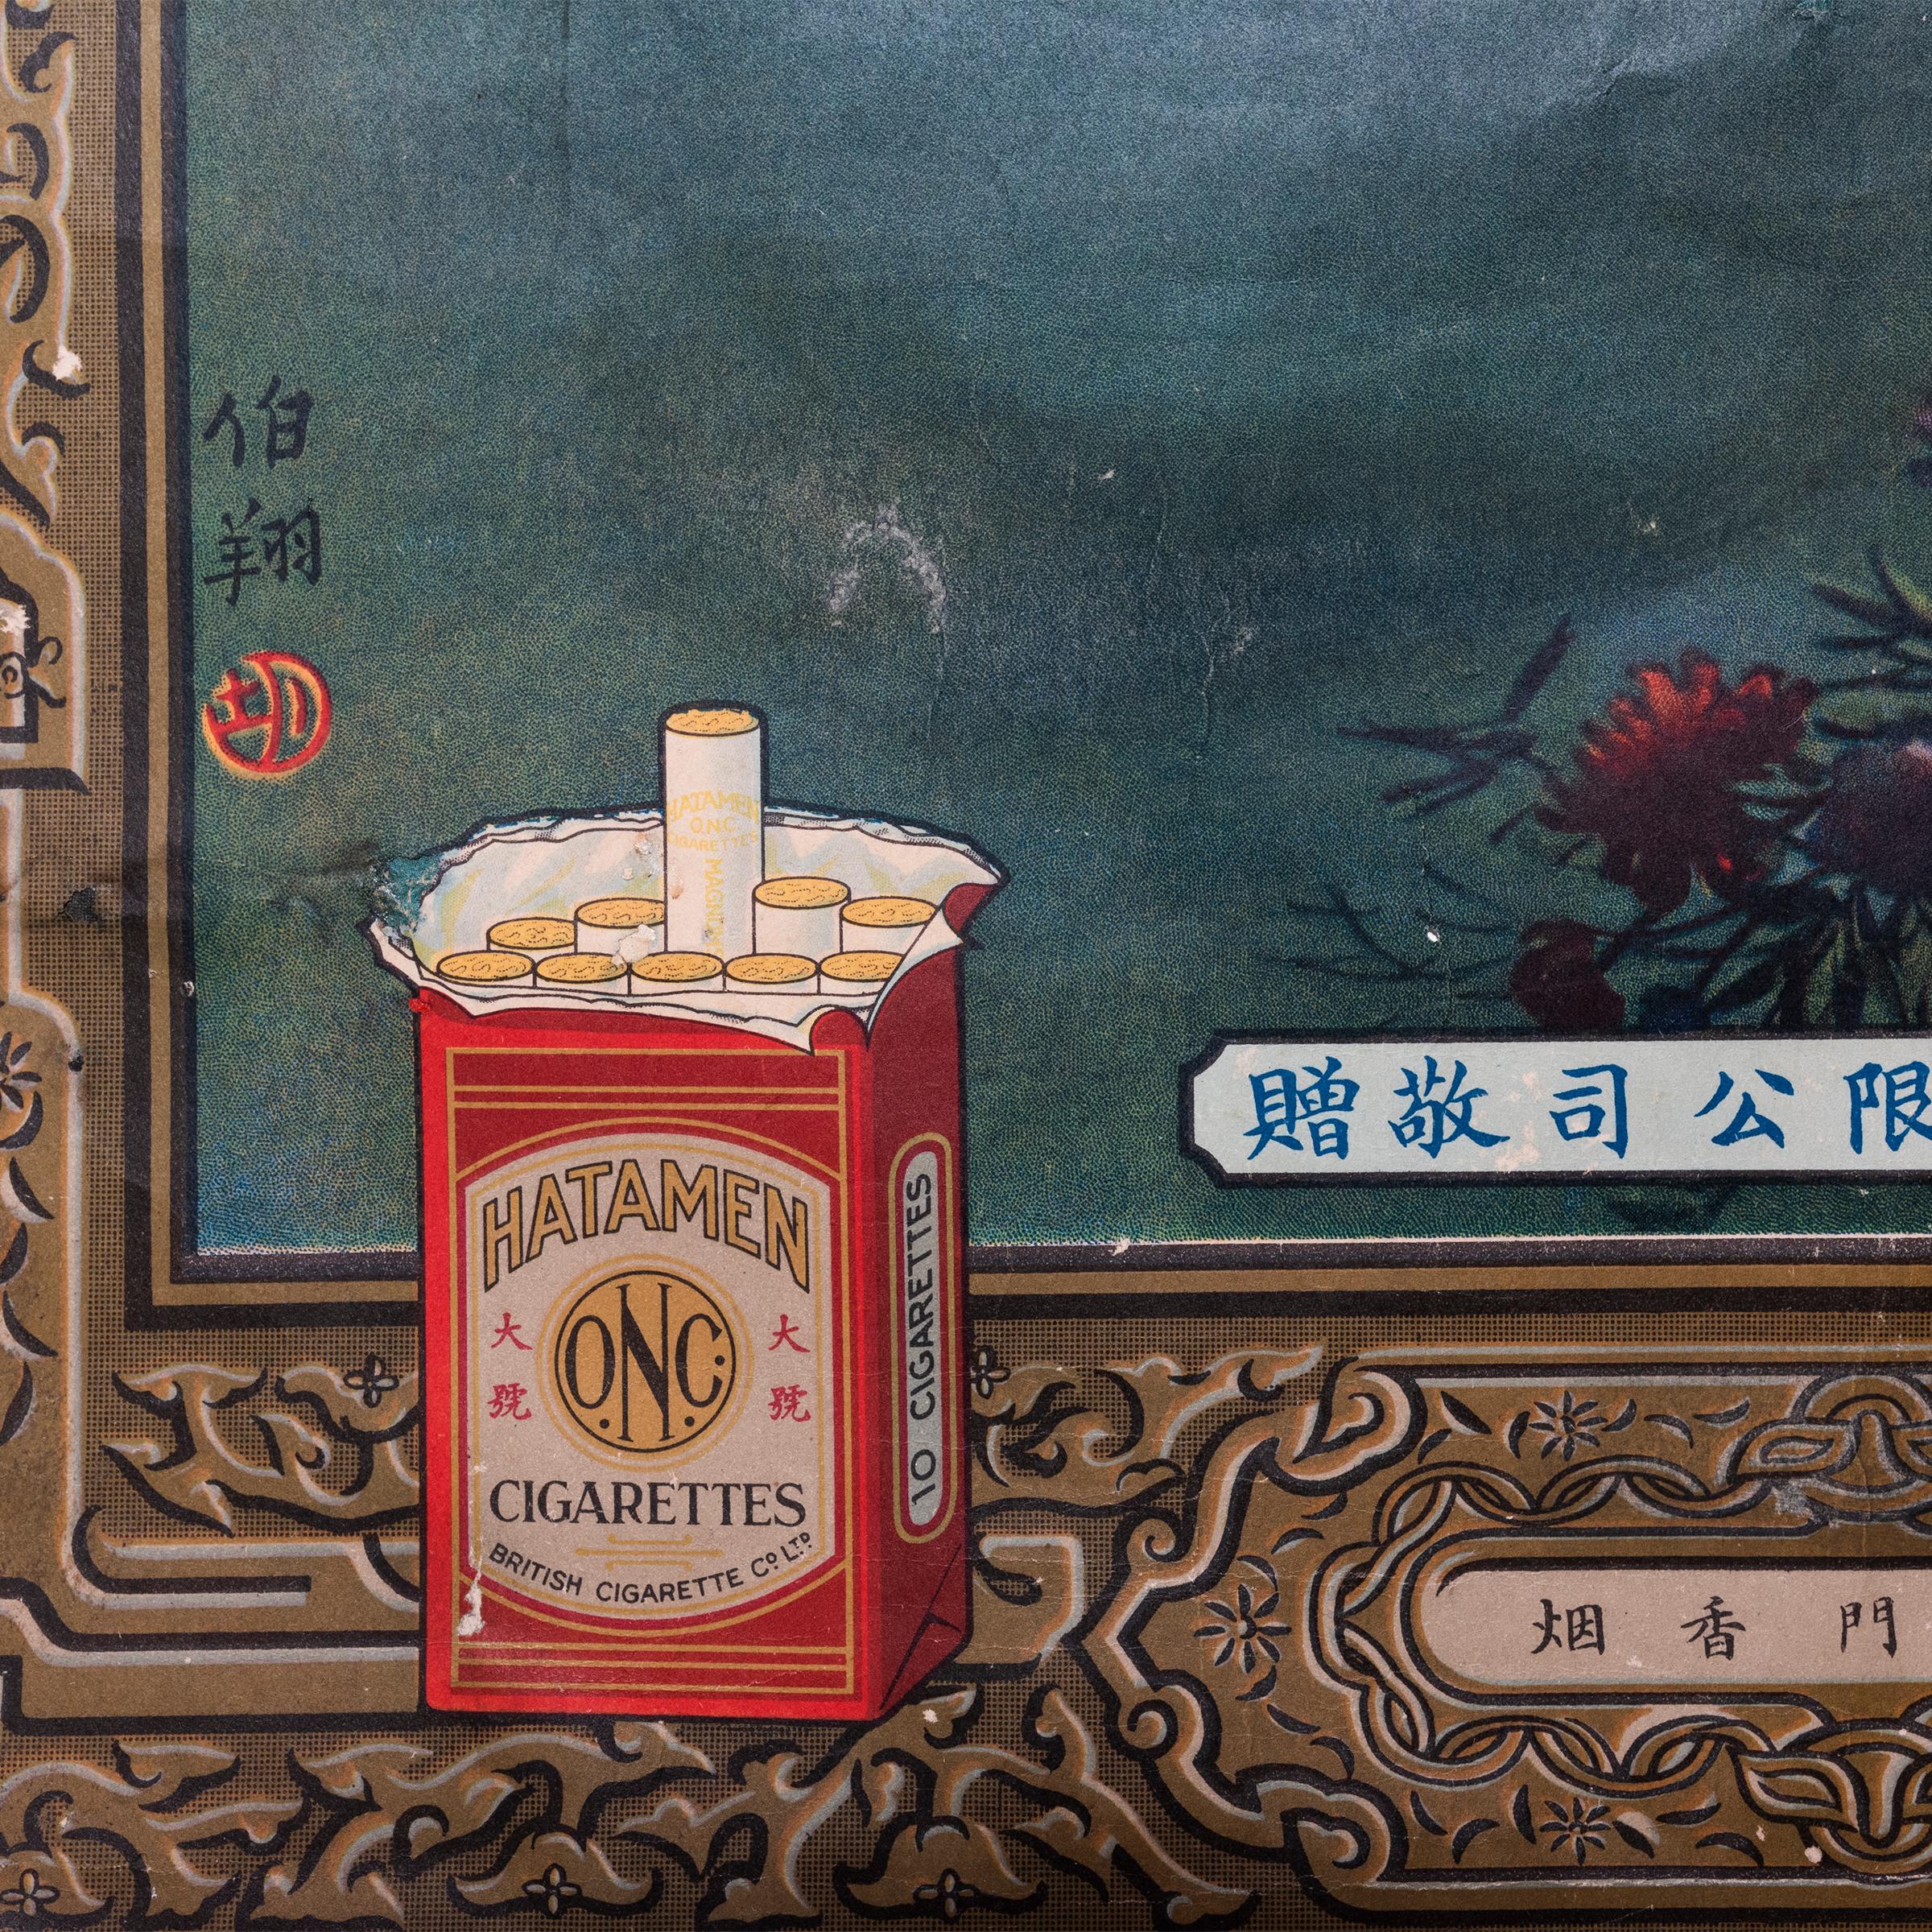 18th century cigarettes